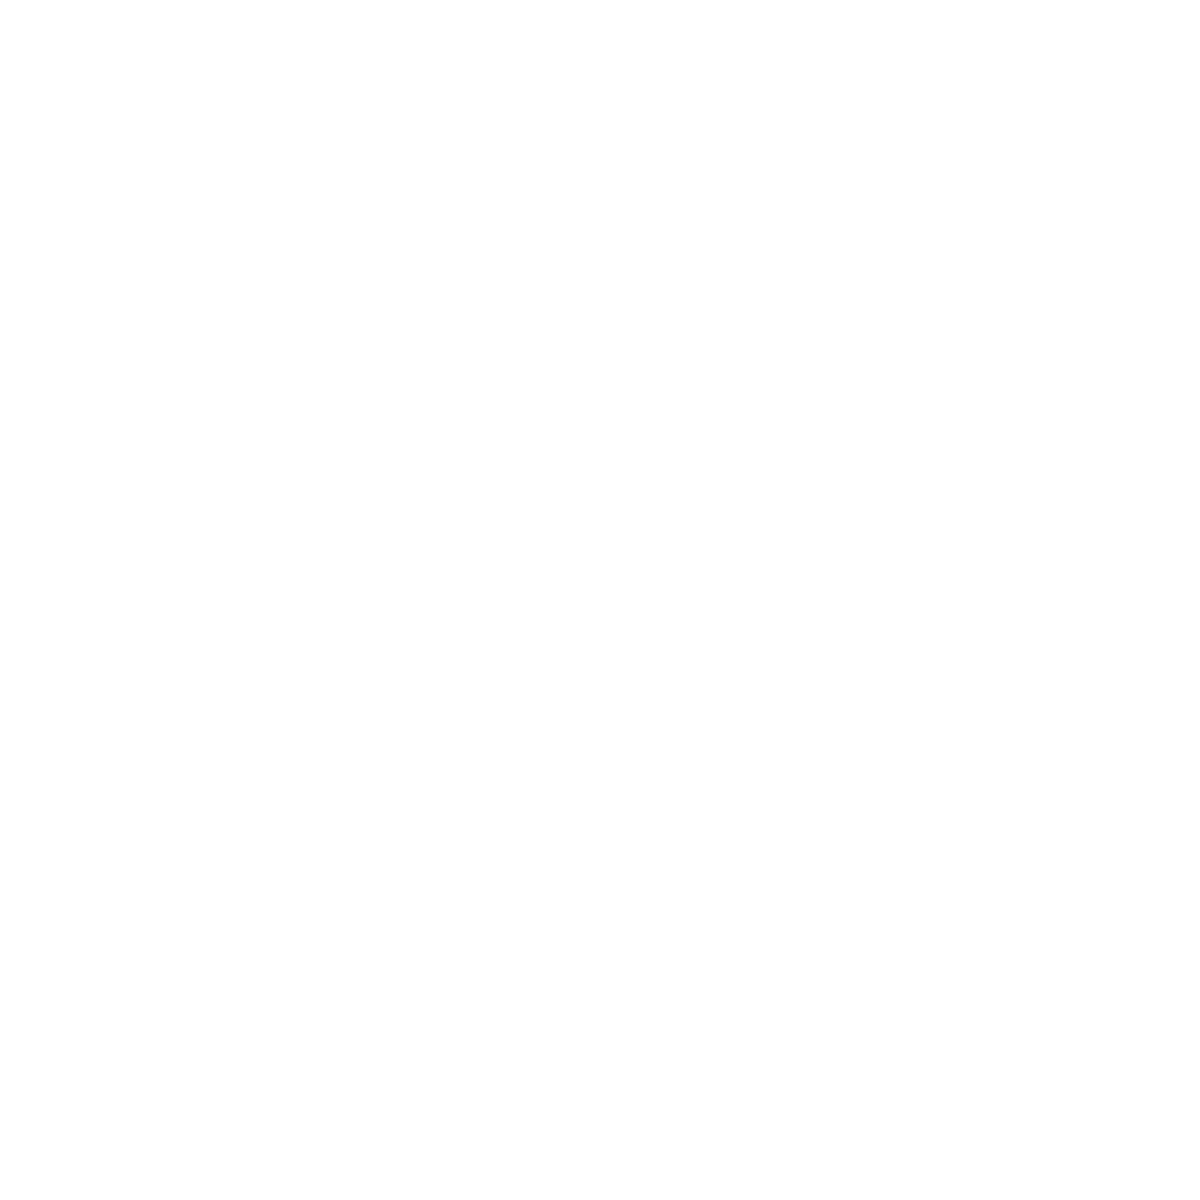 Sierbetonklinker Zwart | Keiformaat | 10x20x6cm